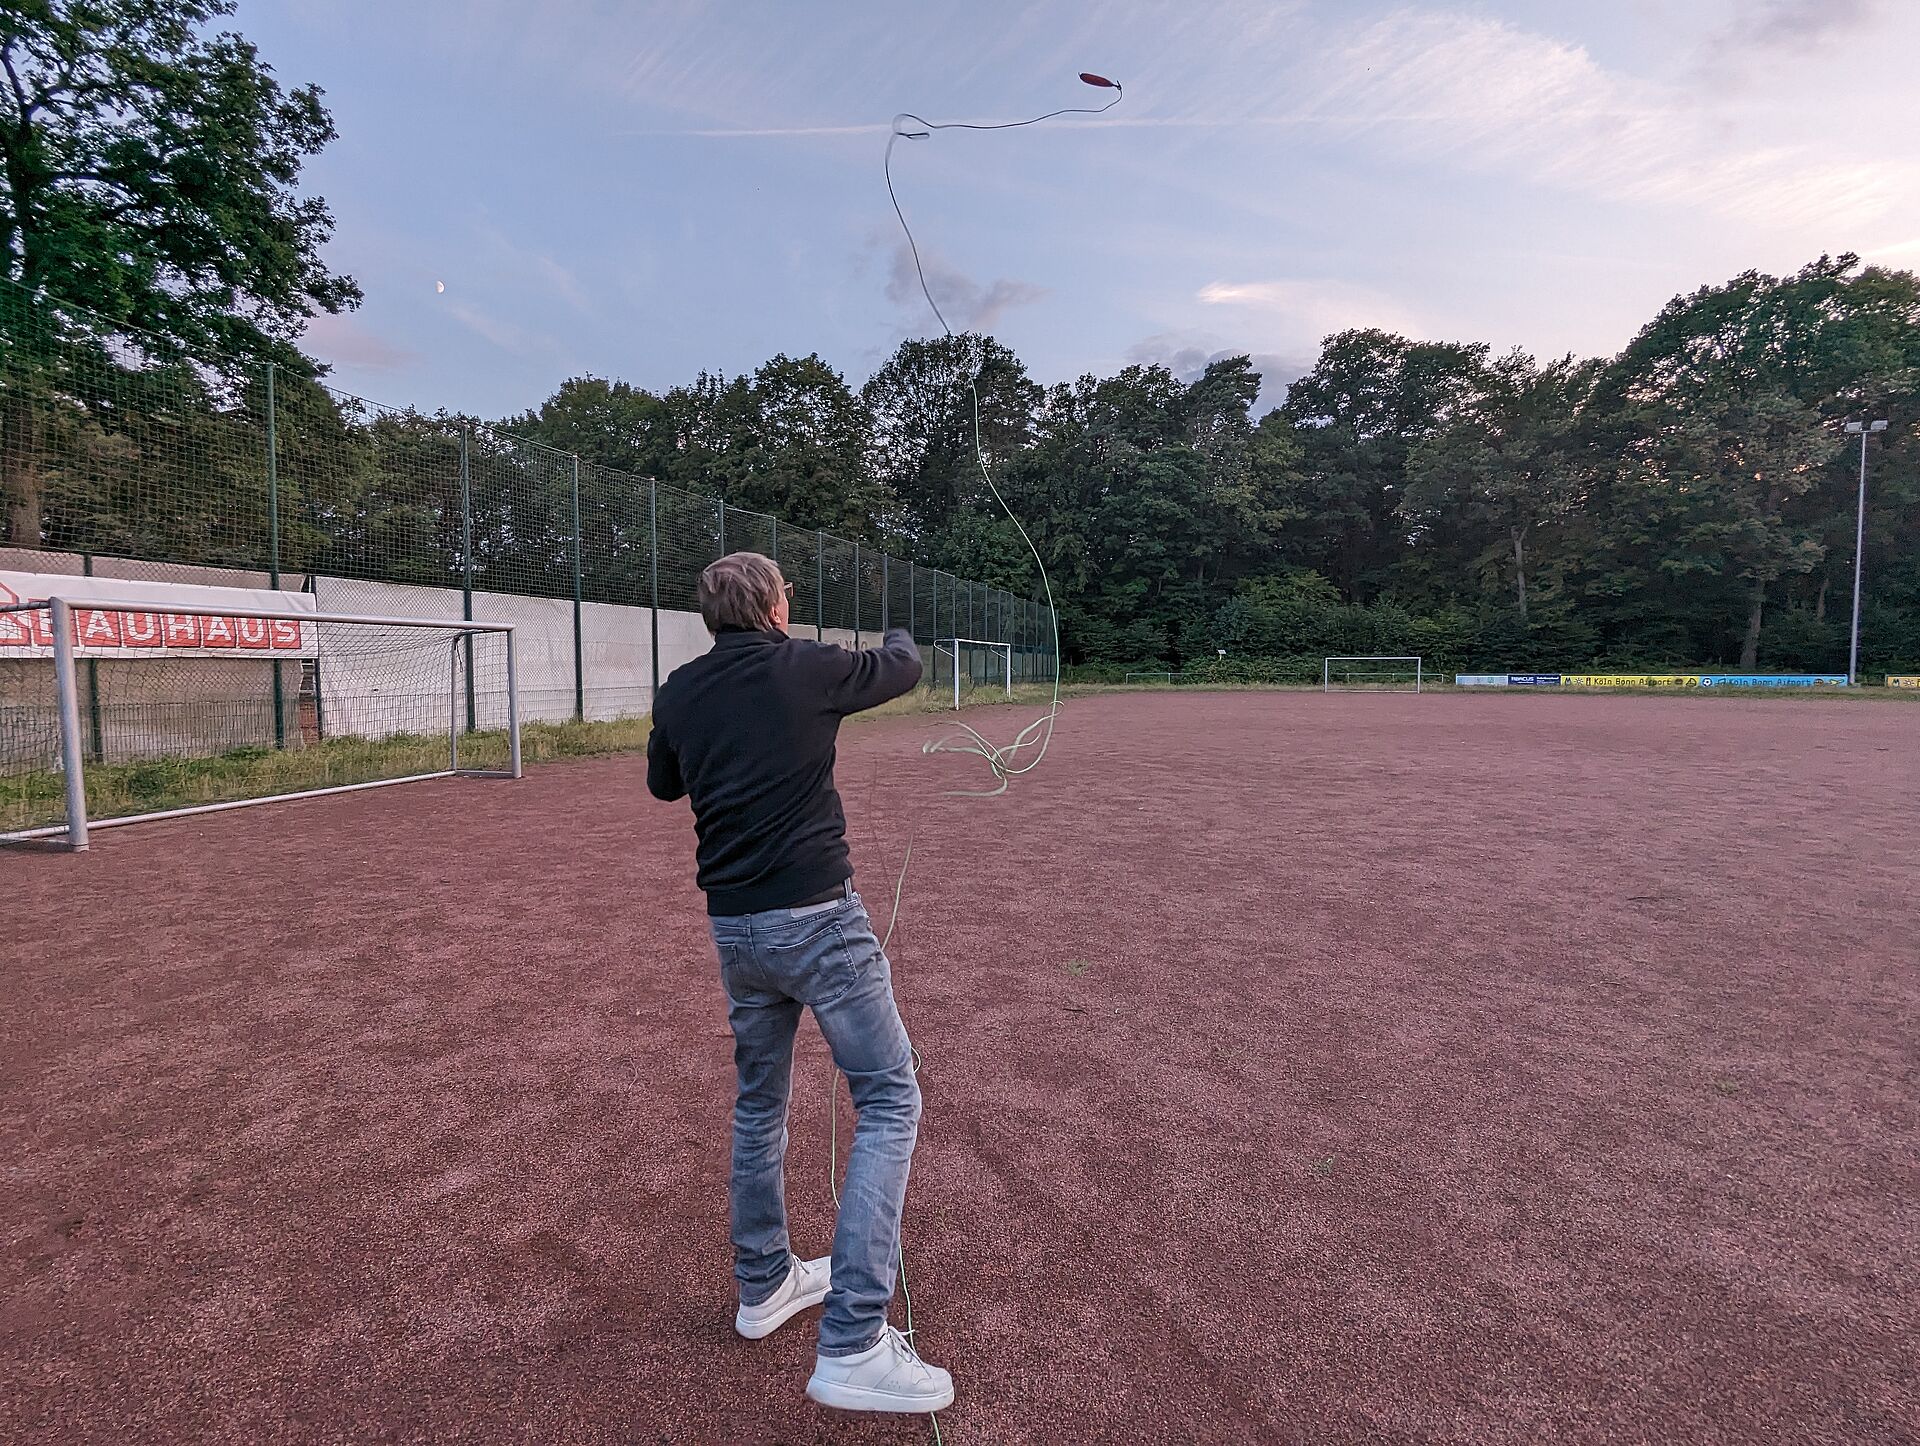 Auf einem Sportfeld wirft ein Mann, von hinten zu sehen, eine Leine mit einem Gewicht daran durch die Luft, da er übt, auf dem Trockenen eine Leinenverbindung herzustellen.